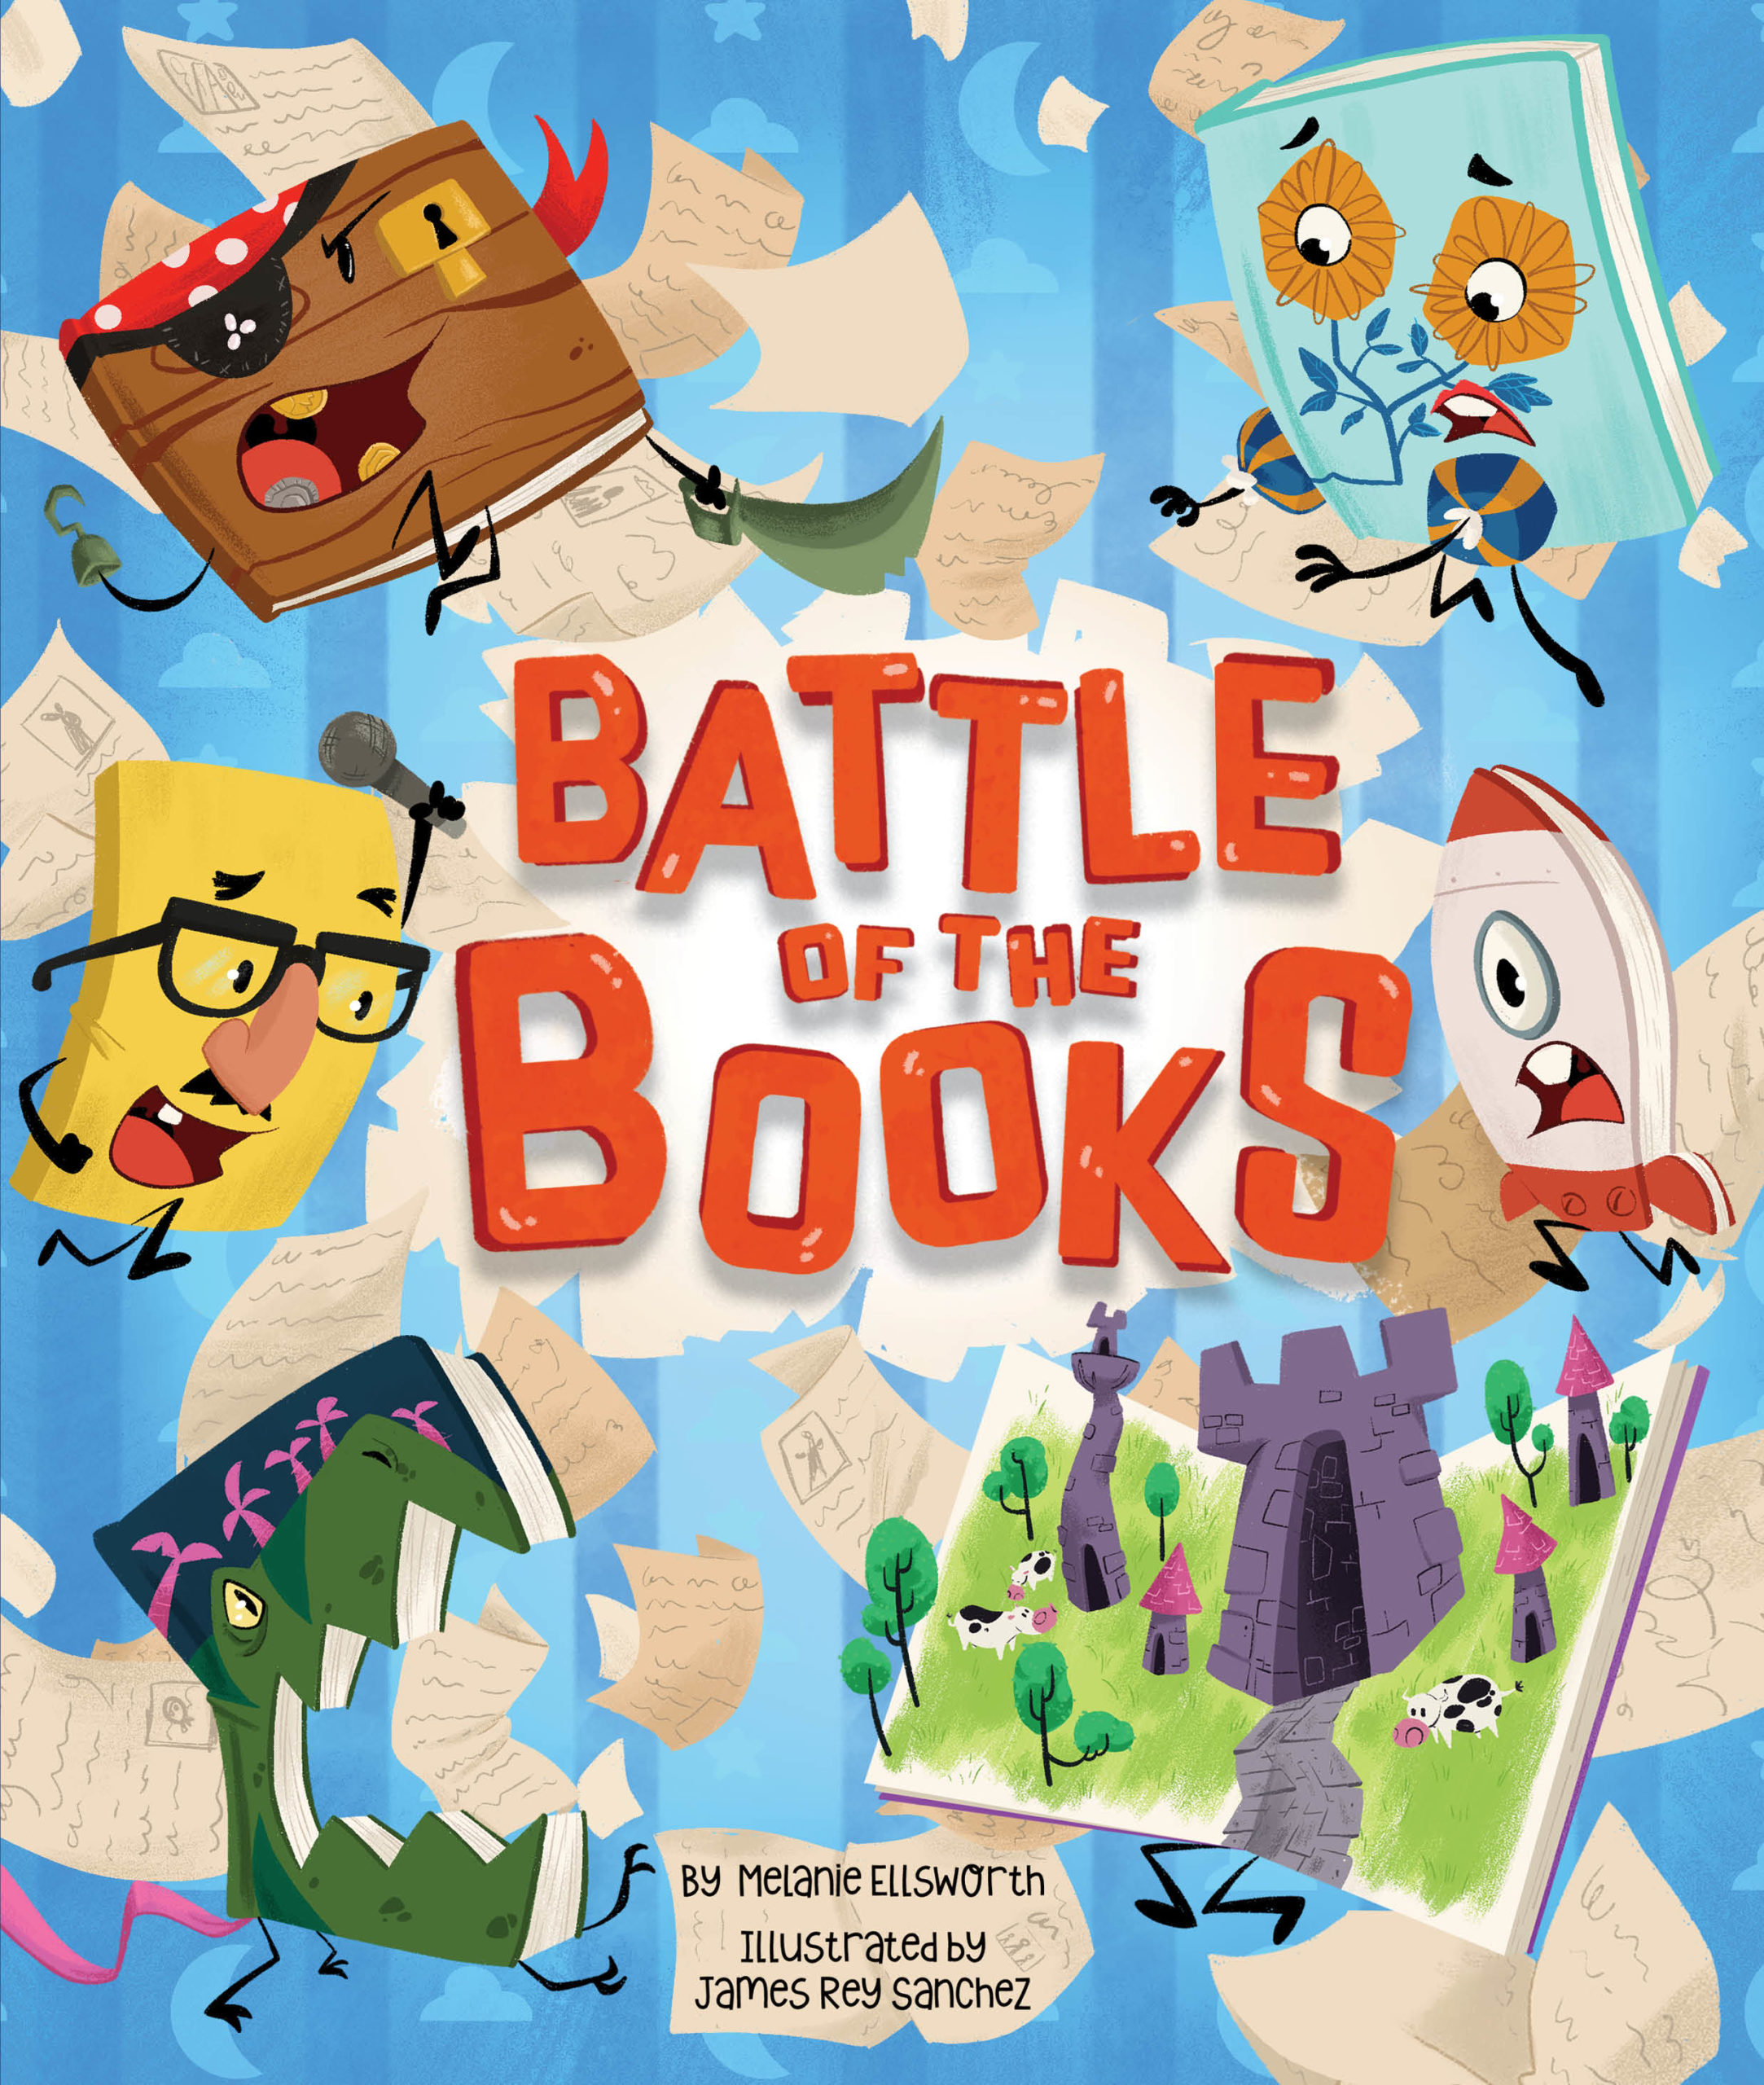 Animals Battle book. Battle book